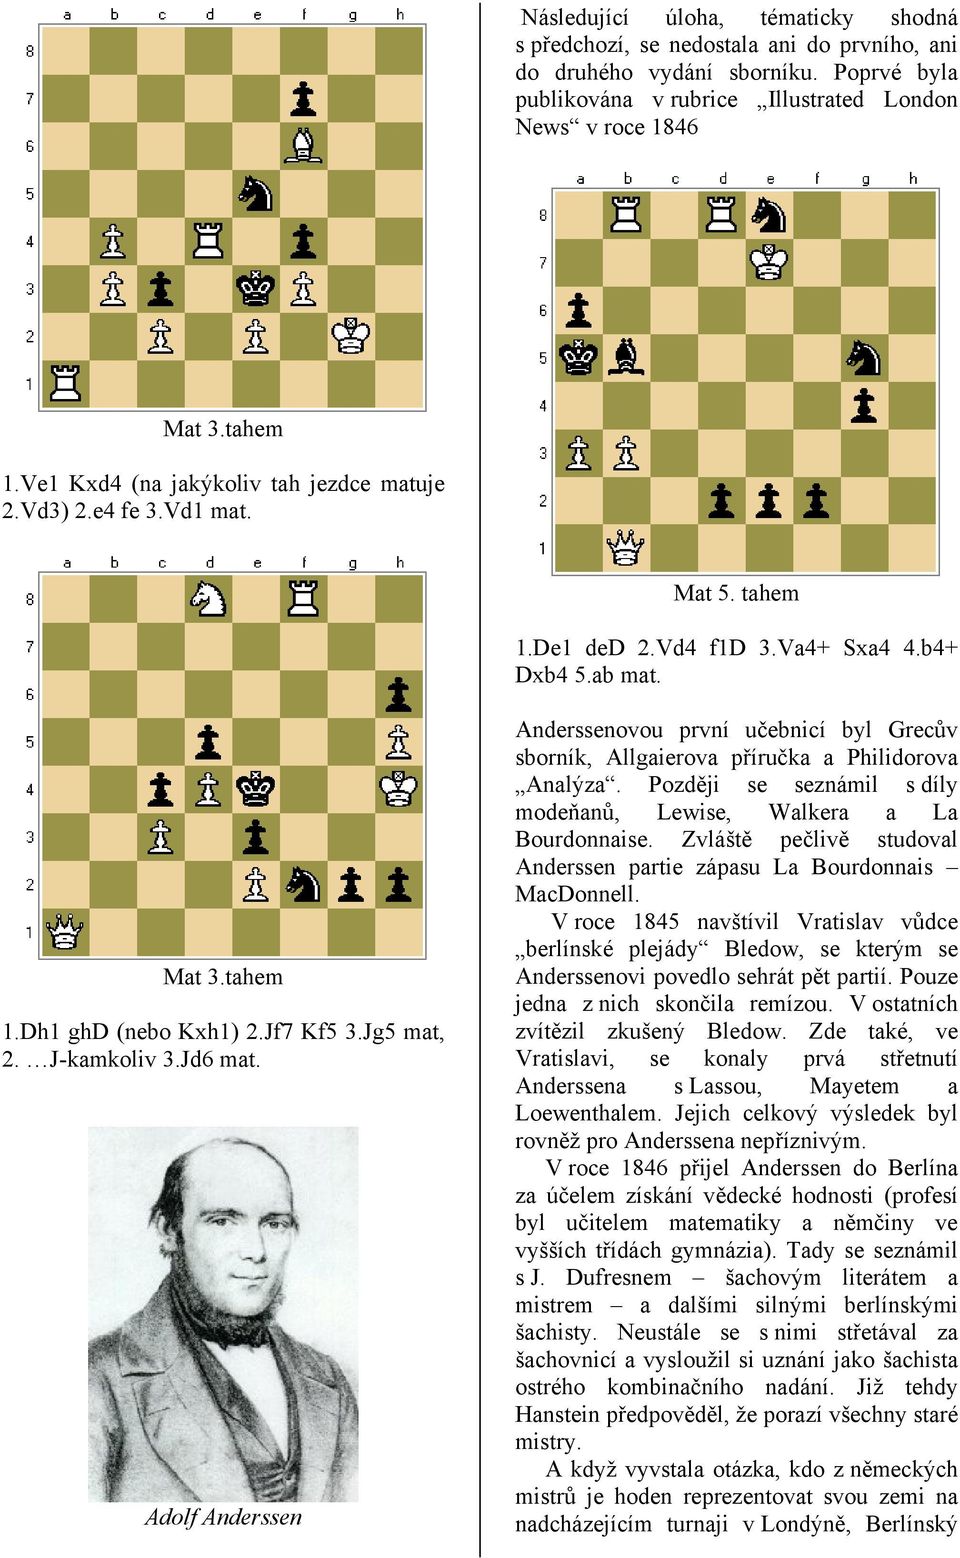 J-kamkoliv 3.Jd6 mat. Adolf Anderssen Anderssenovou první učebnicí byl Grecův sborník, Allgaierova příručka a Philidorova Analýza.